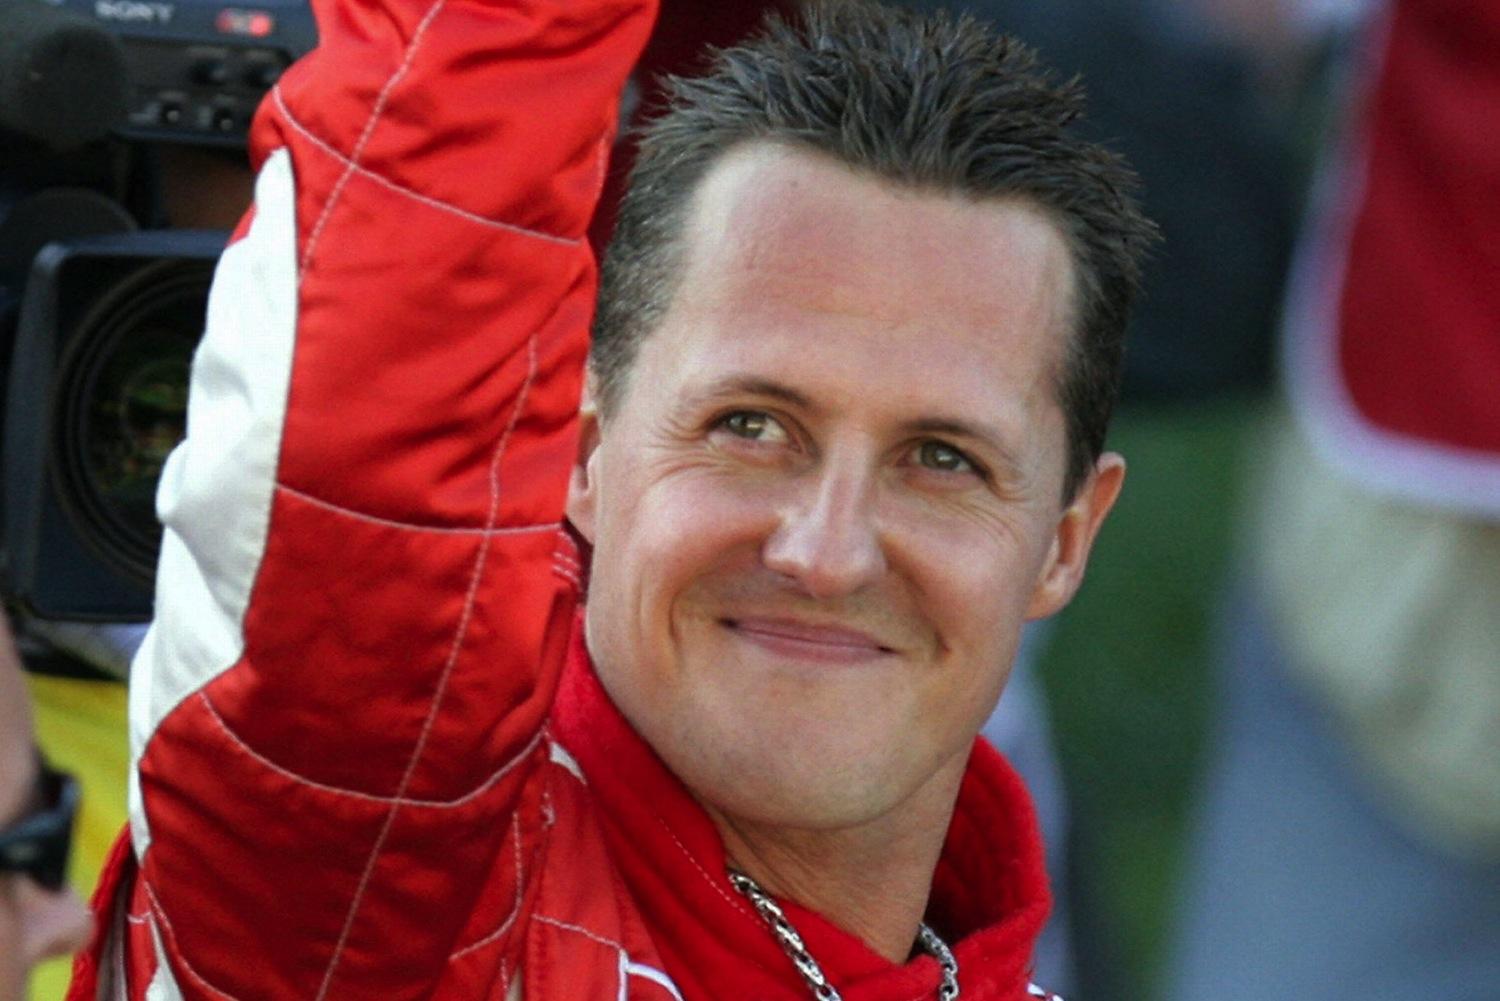 Michael-Schumacher (risorsa del web)